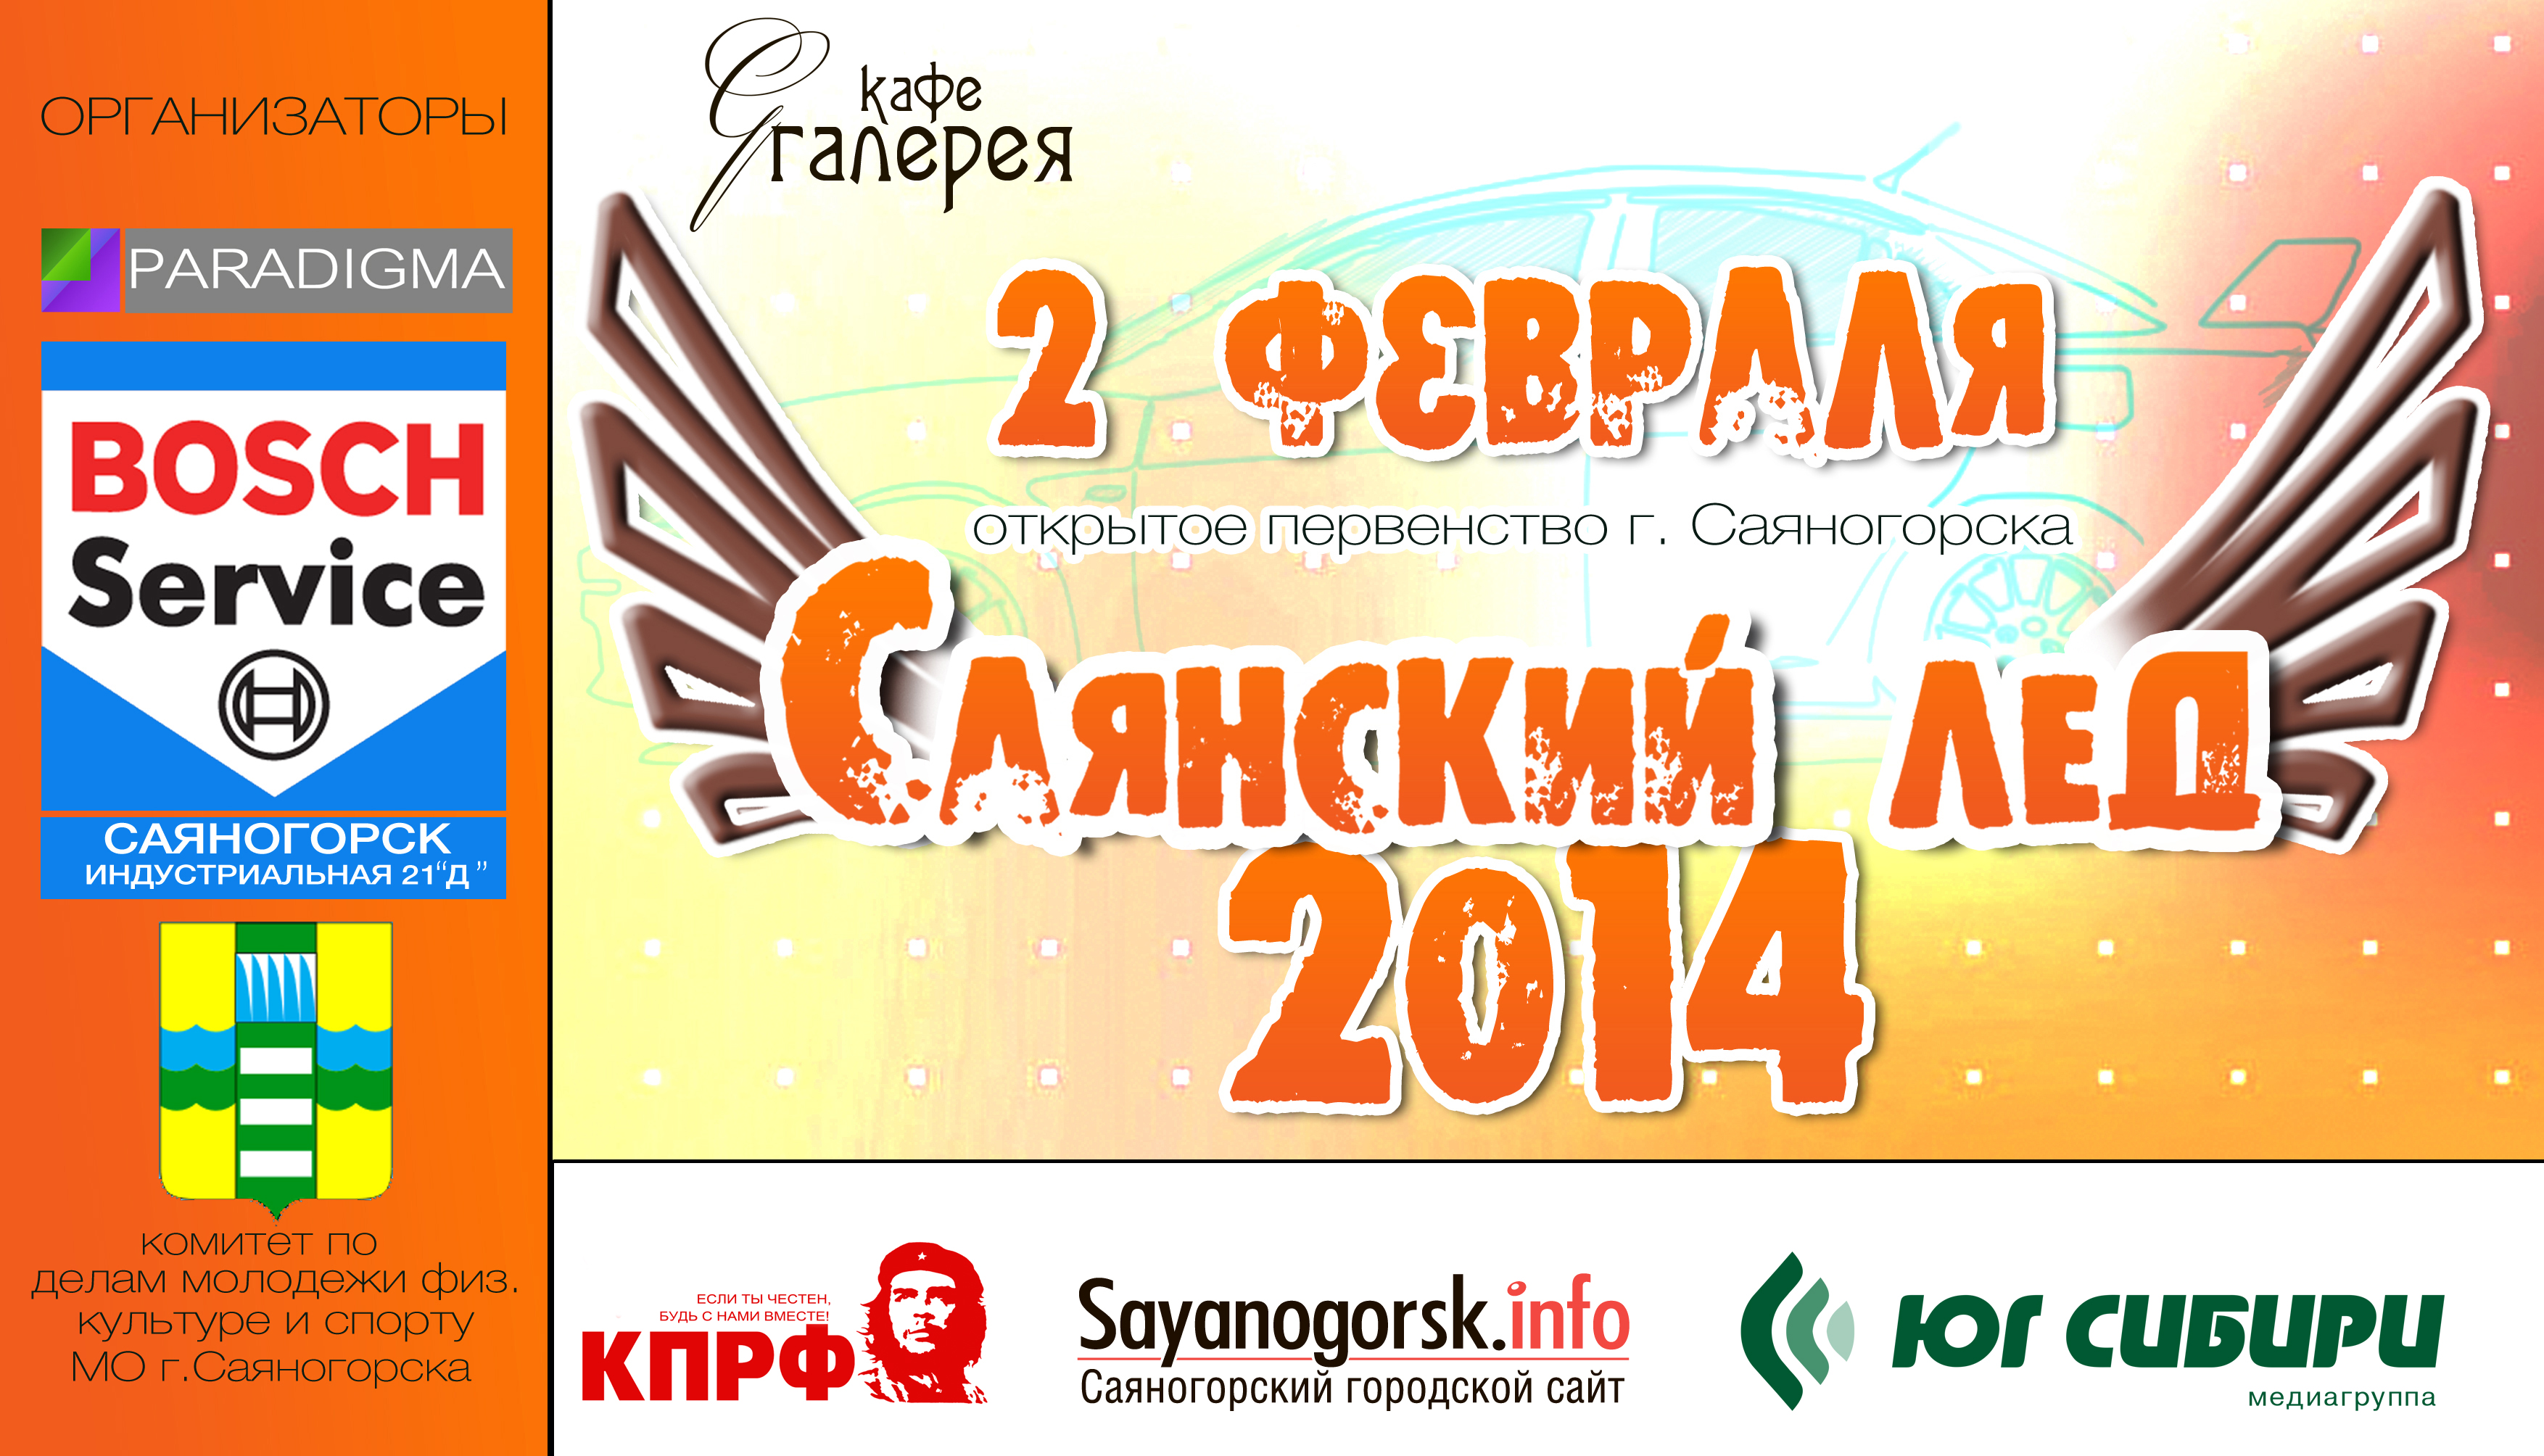 Саяногорск Инфо - logo-2014-new.jpg, Скачано: 1515